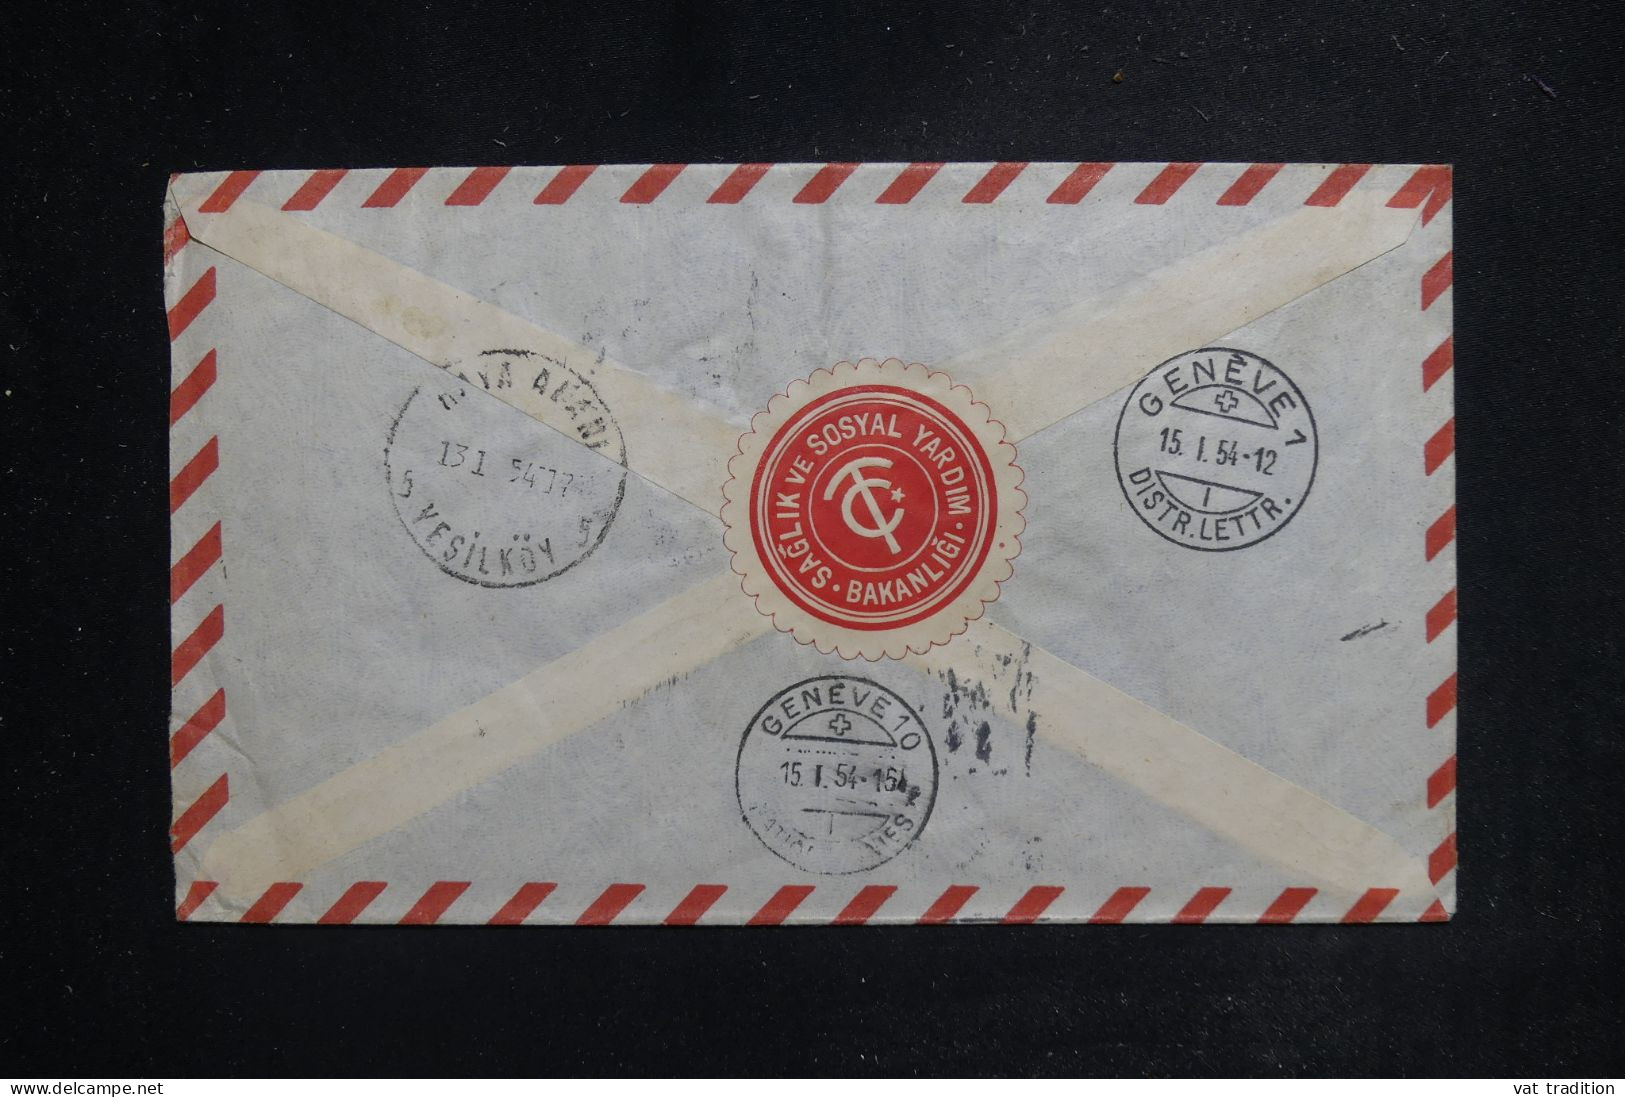 TURQUIE - Enveloppe Gouvernementale En Recommandé De Ankara Pour Genève En 1954 - L 144361 - Lettres & Documents